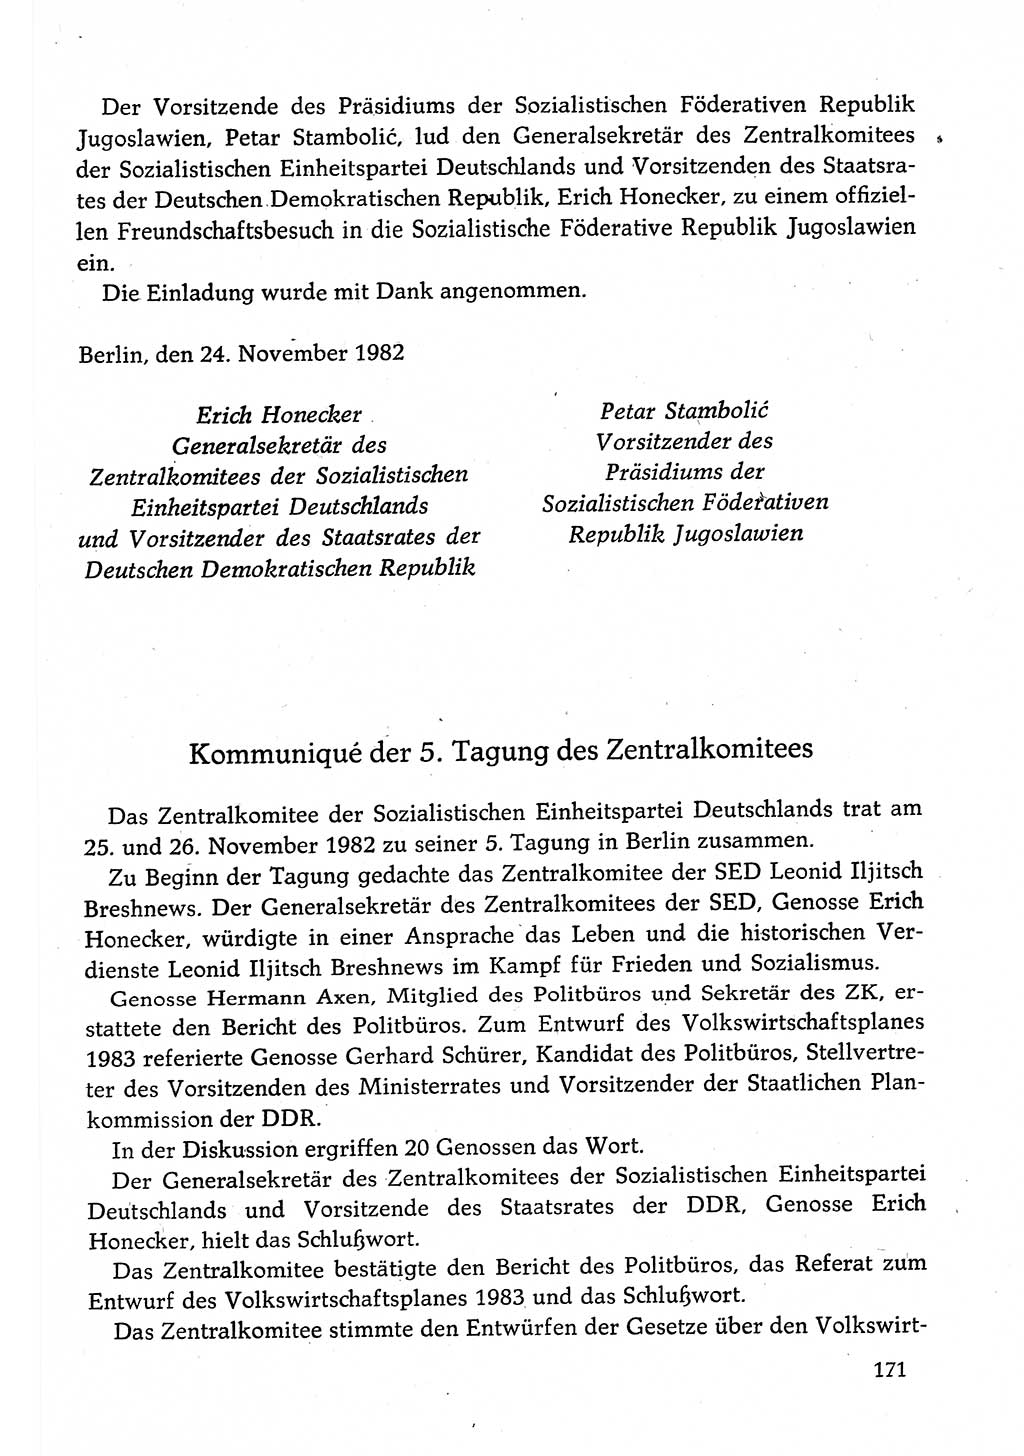 Dokumente der Sozialistischen Einheitspartei Deutschlands (SED) [Deutsche Demokratische Republik (DDR)] 1982-1983, Seite 171 (Dok. SED DDR 1982-1983, S. 171)